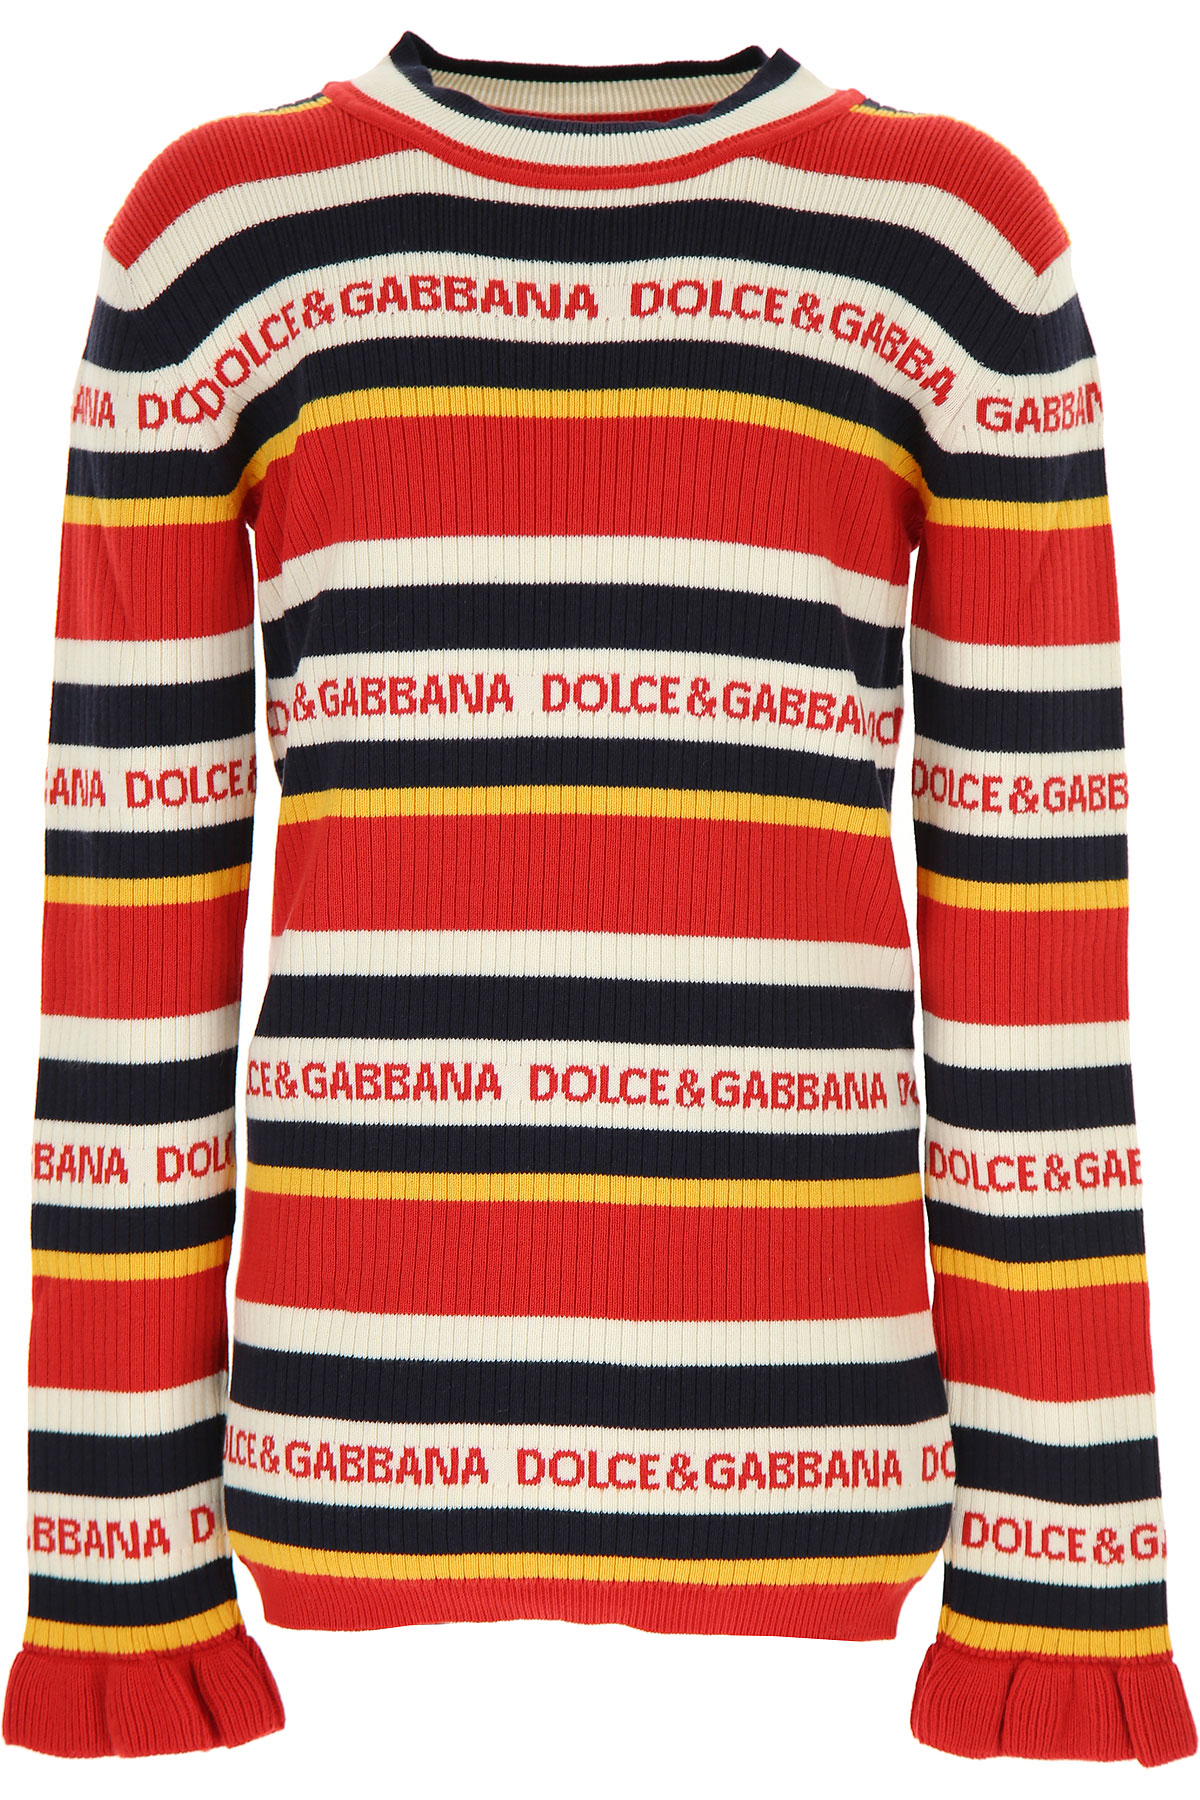 Dolce & Gabbana Kinder Pullover für Mädchen Günstig im Sale, Rot, Baumwolle, 2017, 10Y 12Y 4Y 6Y 8Y